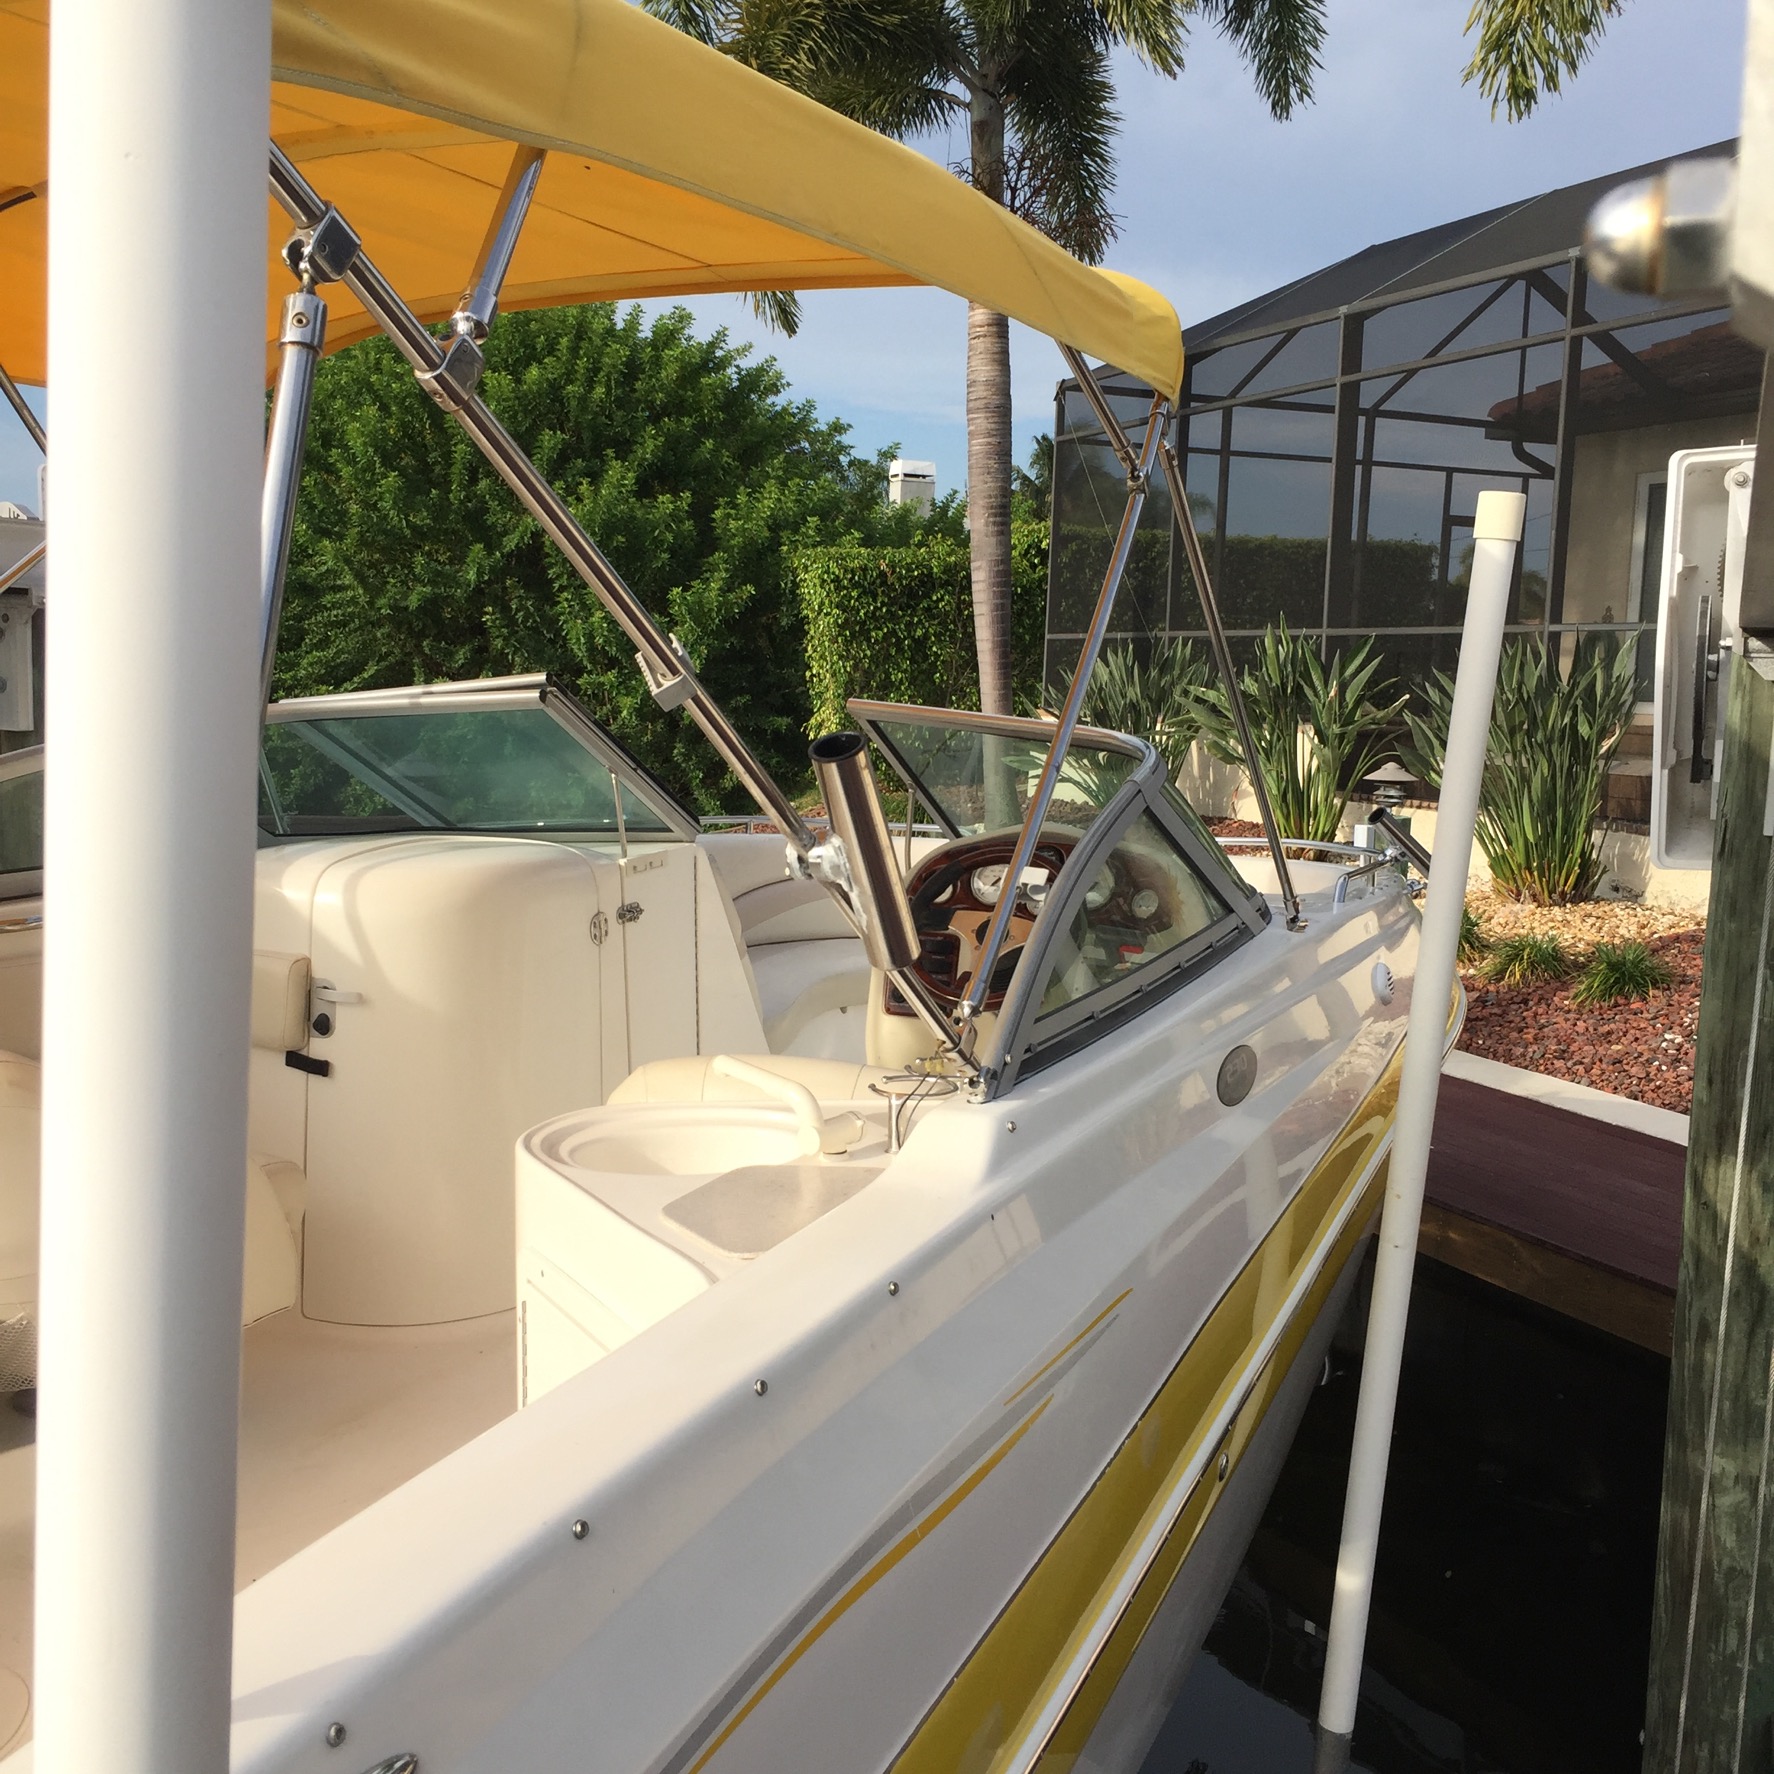 Boote mieten in SW-Florida, bei Wischis Florida Home. Mieten Sie ihr Boot in Cape Coral